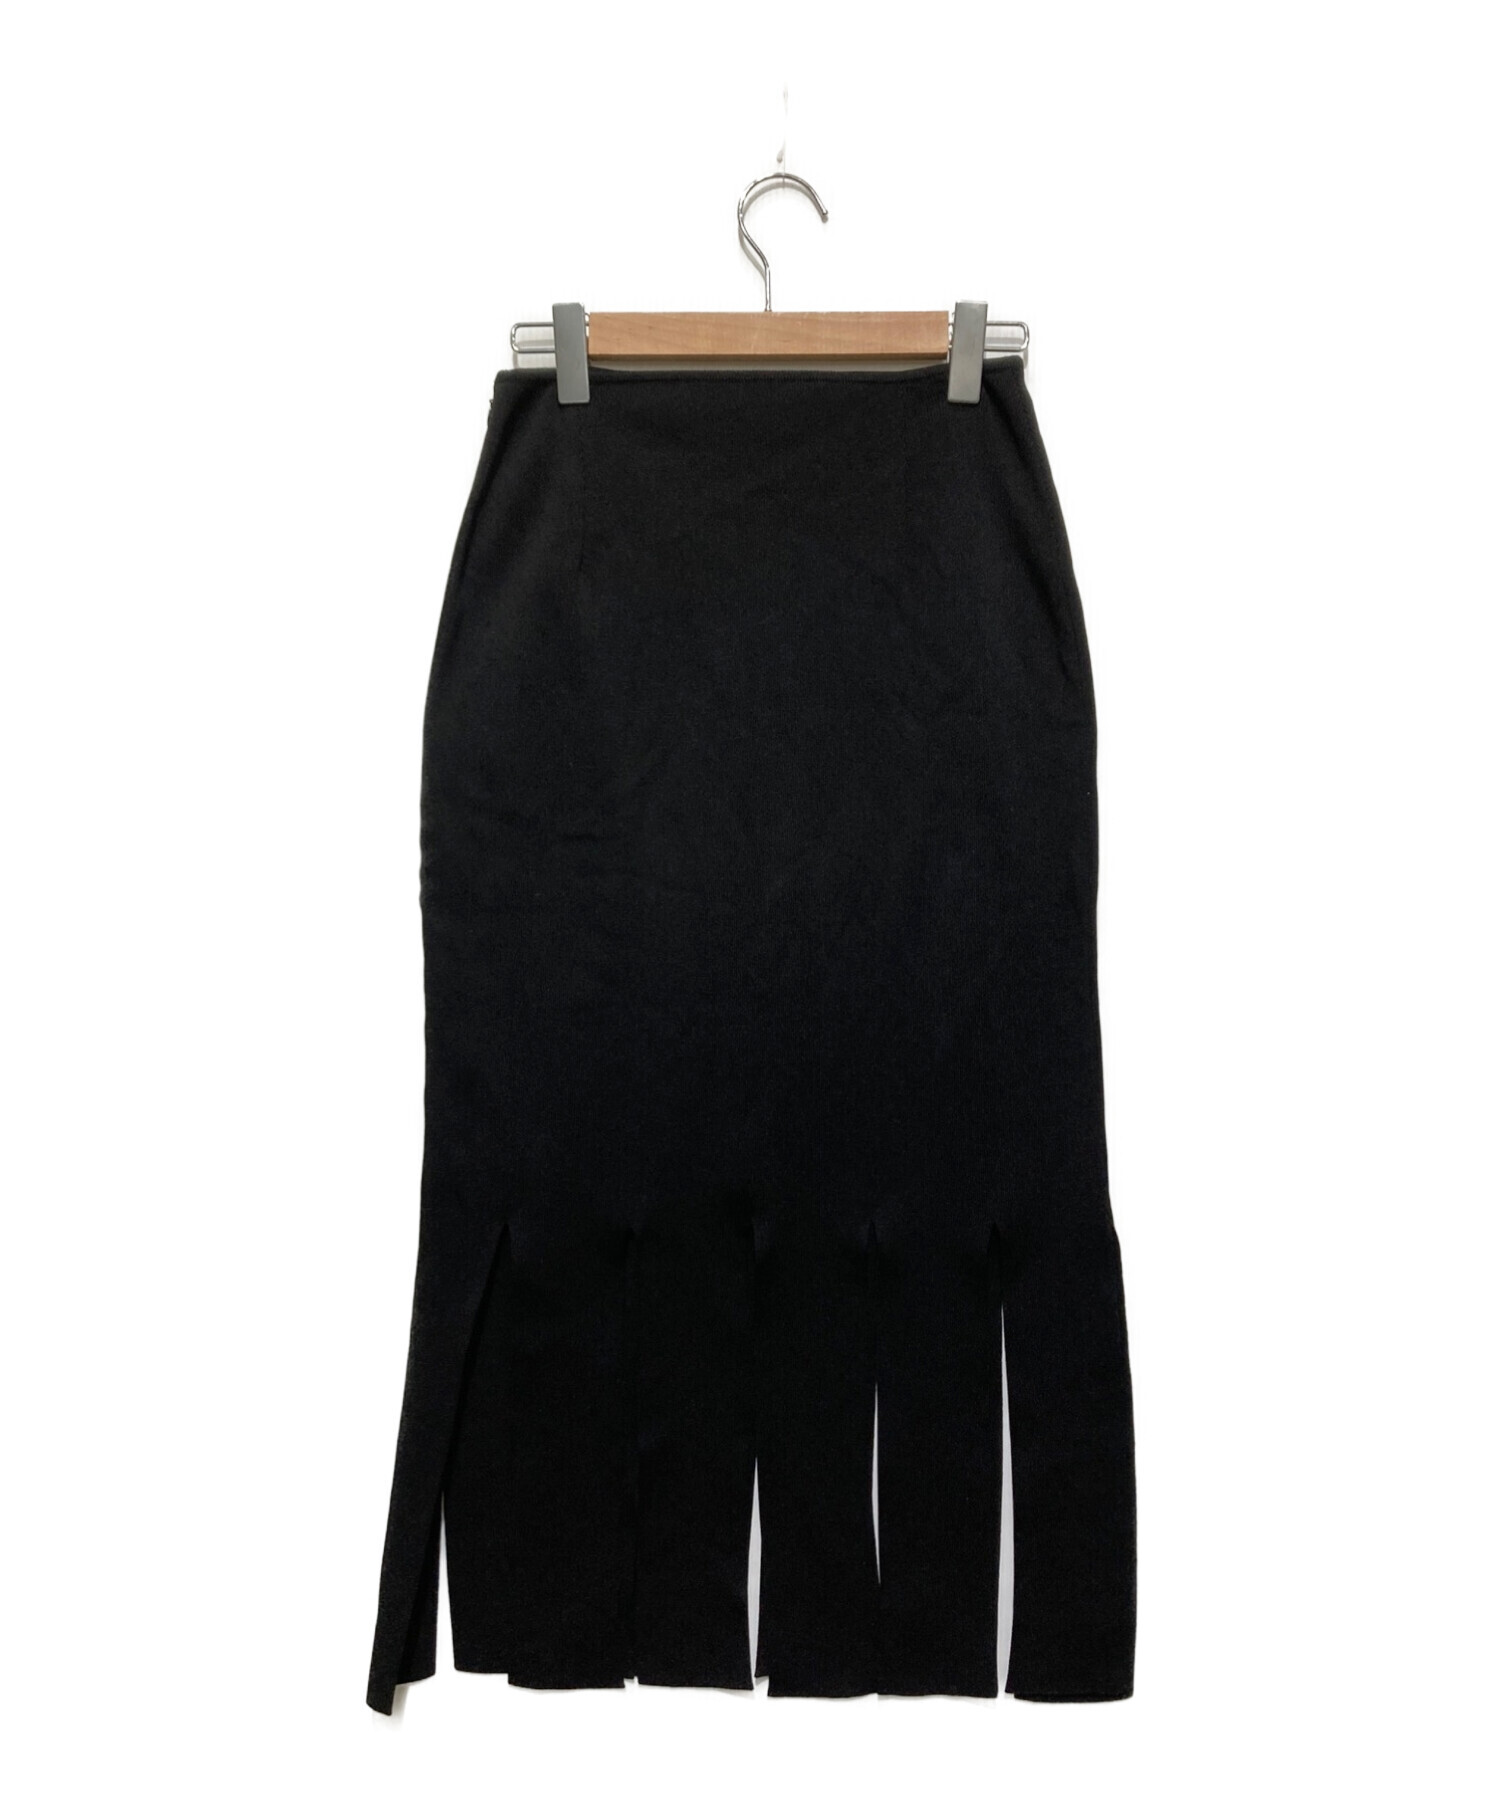 iwscat商品一覧LE CIEL BLEU Strip Form Knit Skirt - ロングスカート